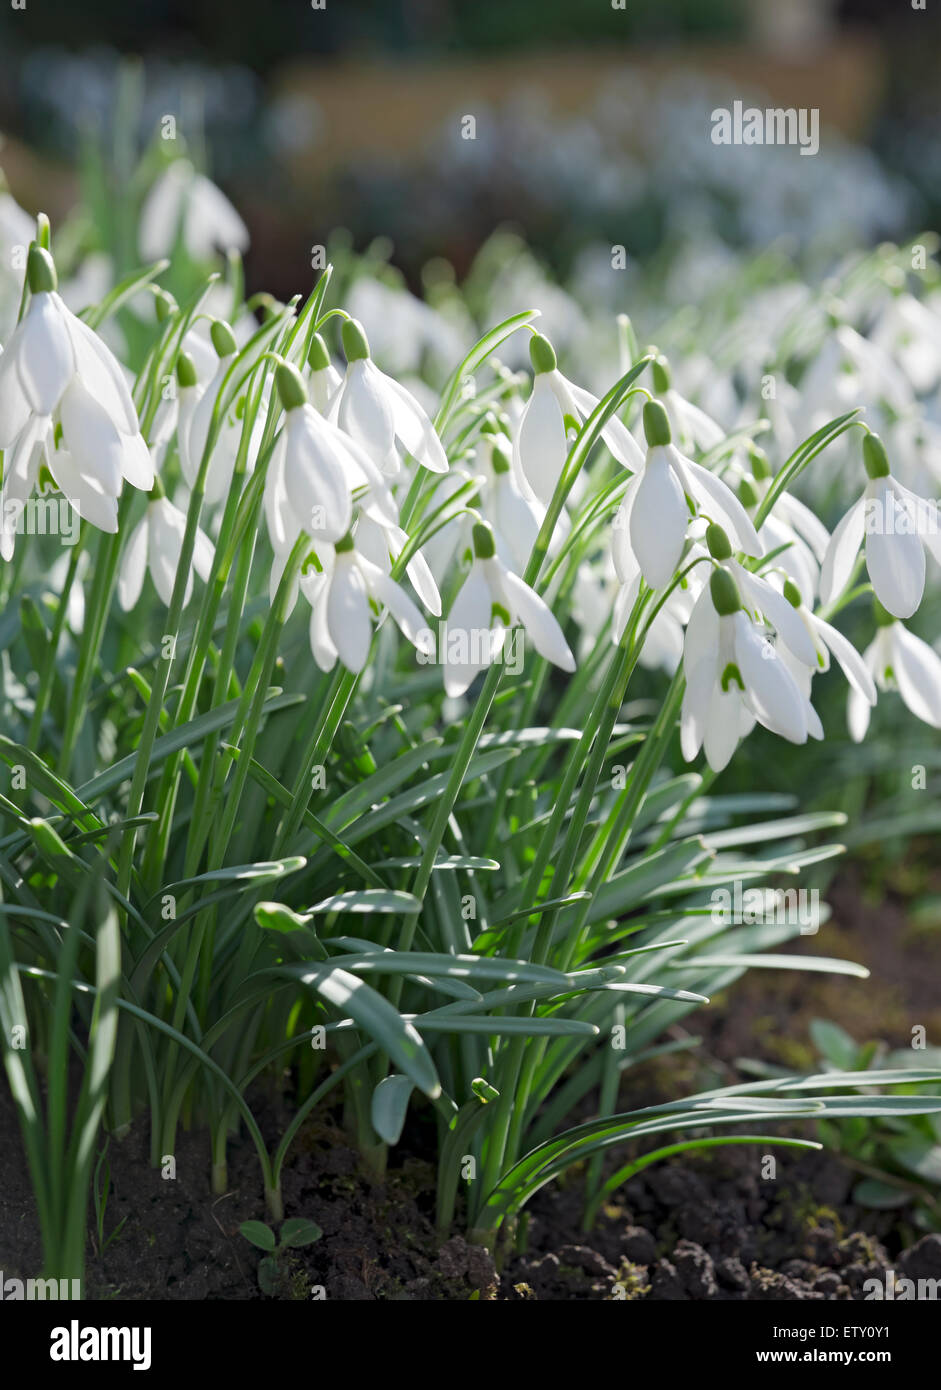 Primo piano di racchette da neve fiori bianchi fioriti Il giardino d'inverno Inghilterra Regno Unito GB Great La Gran Bretagna Foto Stock